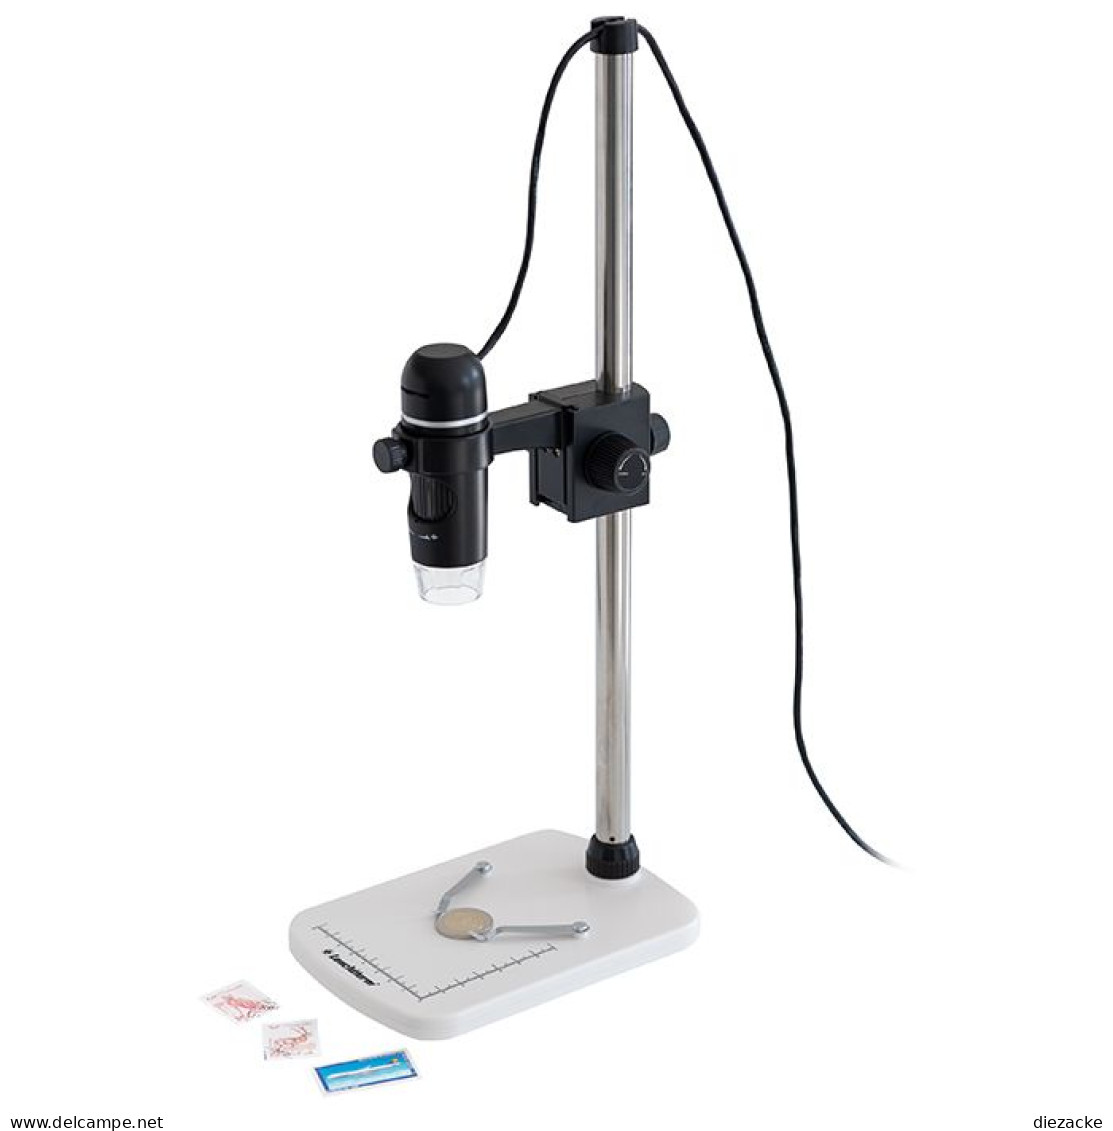 Leuchtturm USB-Digital-Mikroskop DM6 Inkl. Stativ 363229 Neu ( - Pinzetten, Lupen, Mikroskope